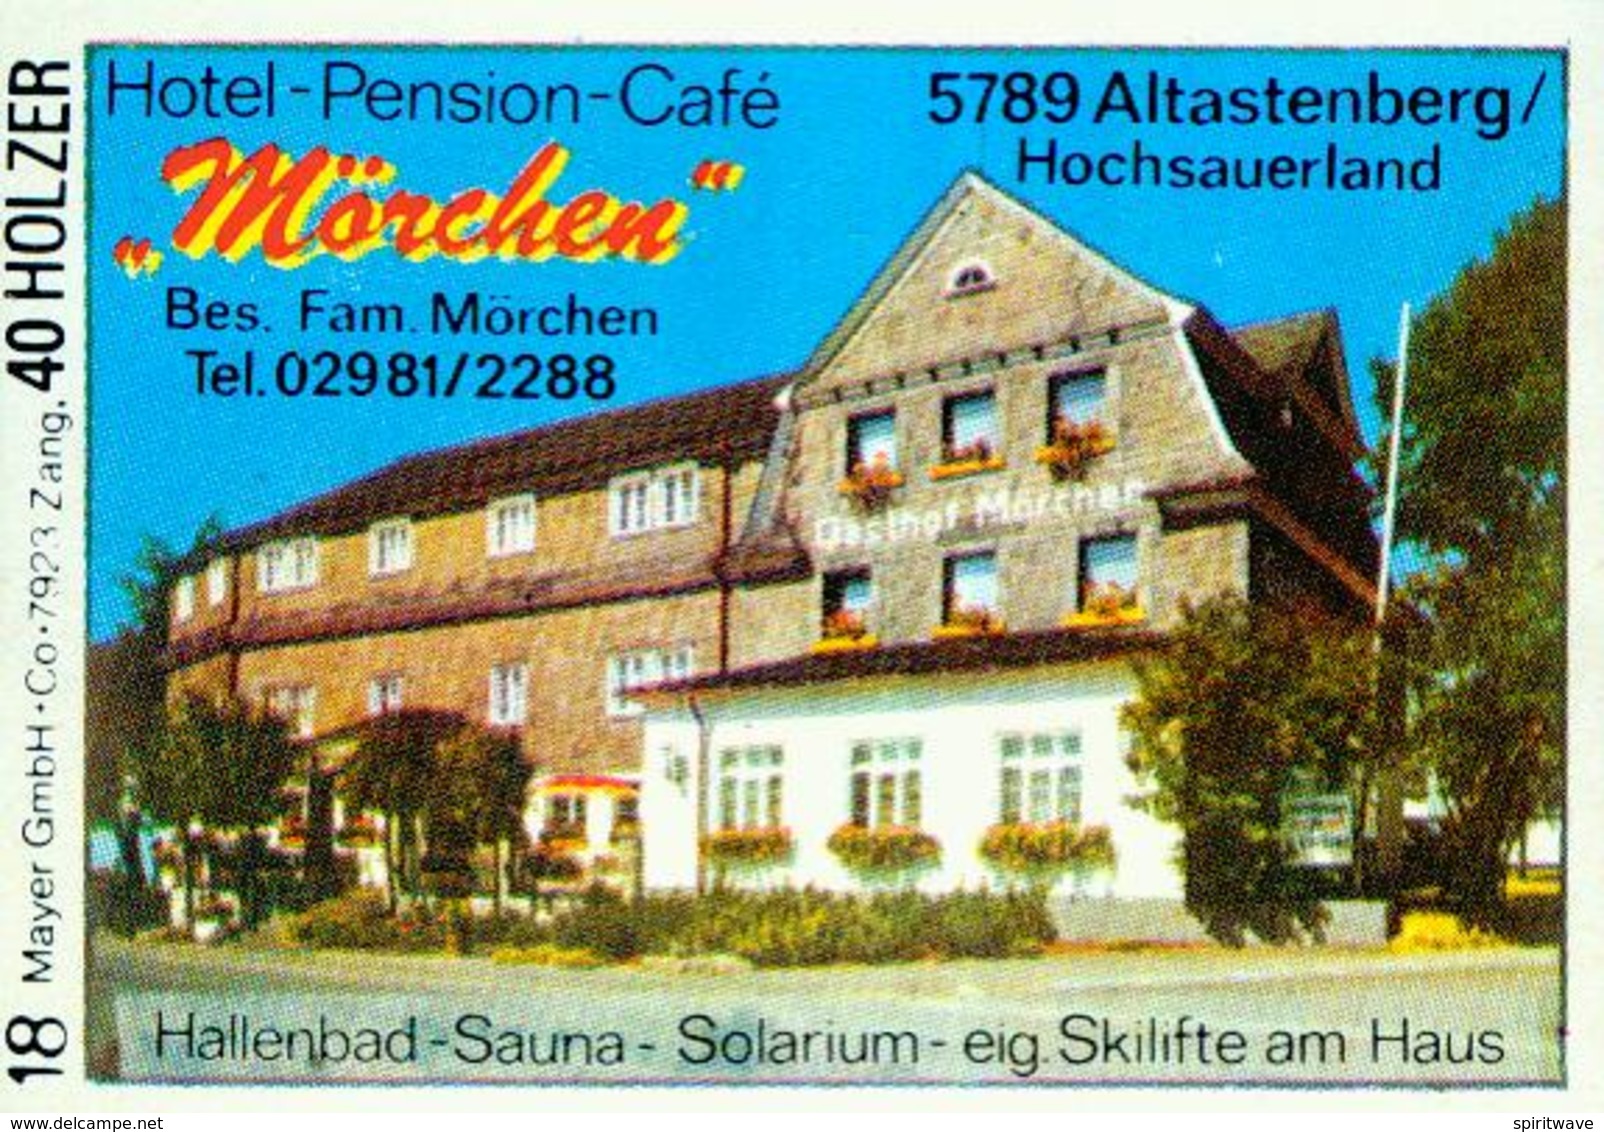 1 Altes Gasthausetikett, Hotel-Pension-Café Mörchen, Bes. Fam. Mörchen, 5789 Altastenberg/Hochsauerland #221 - Matchbox Labels